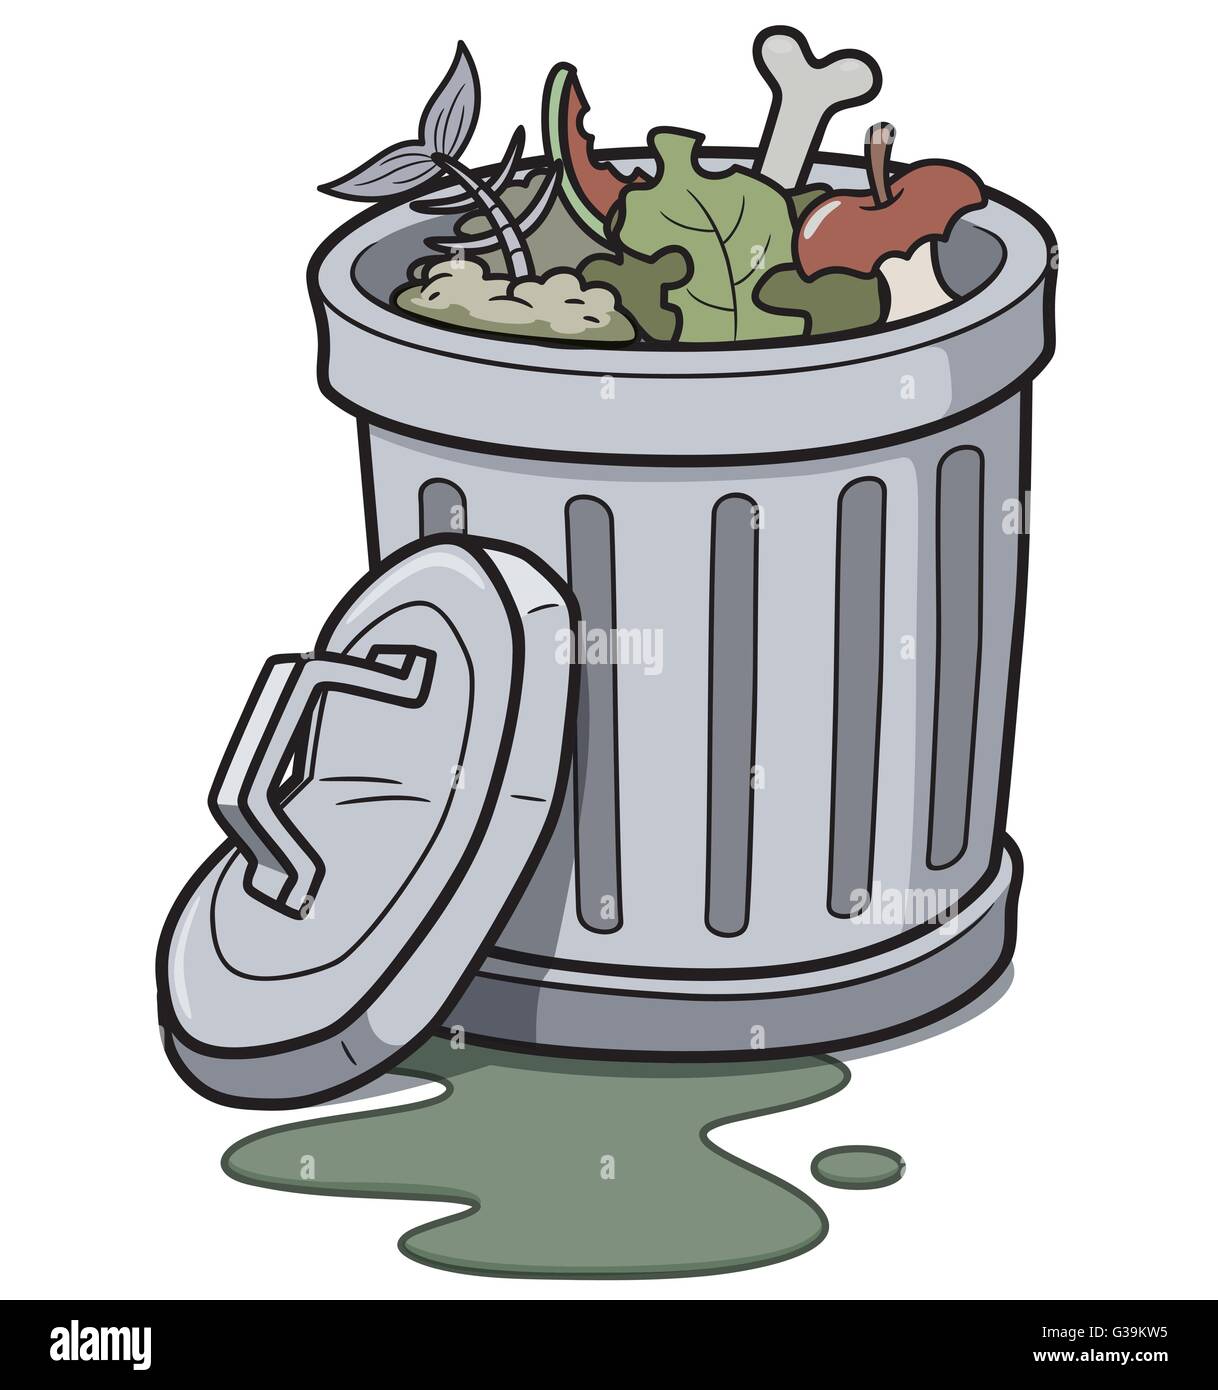 Vektor-Illustration der Mülleimer Stock Vektor